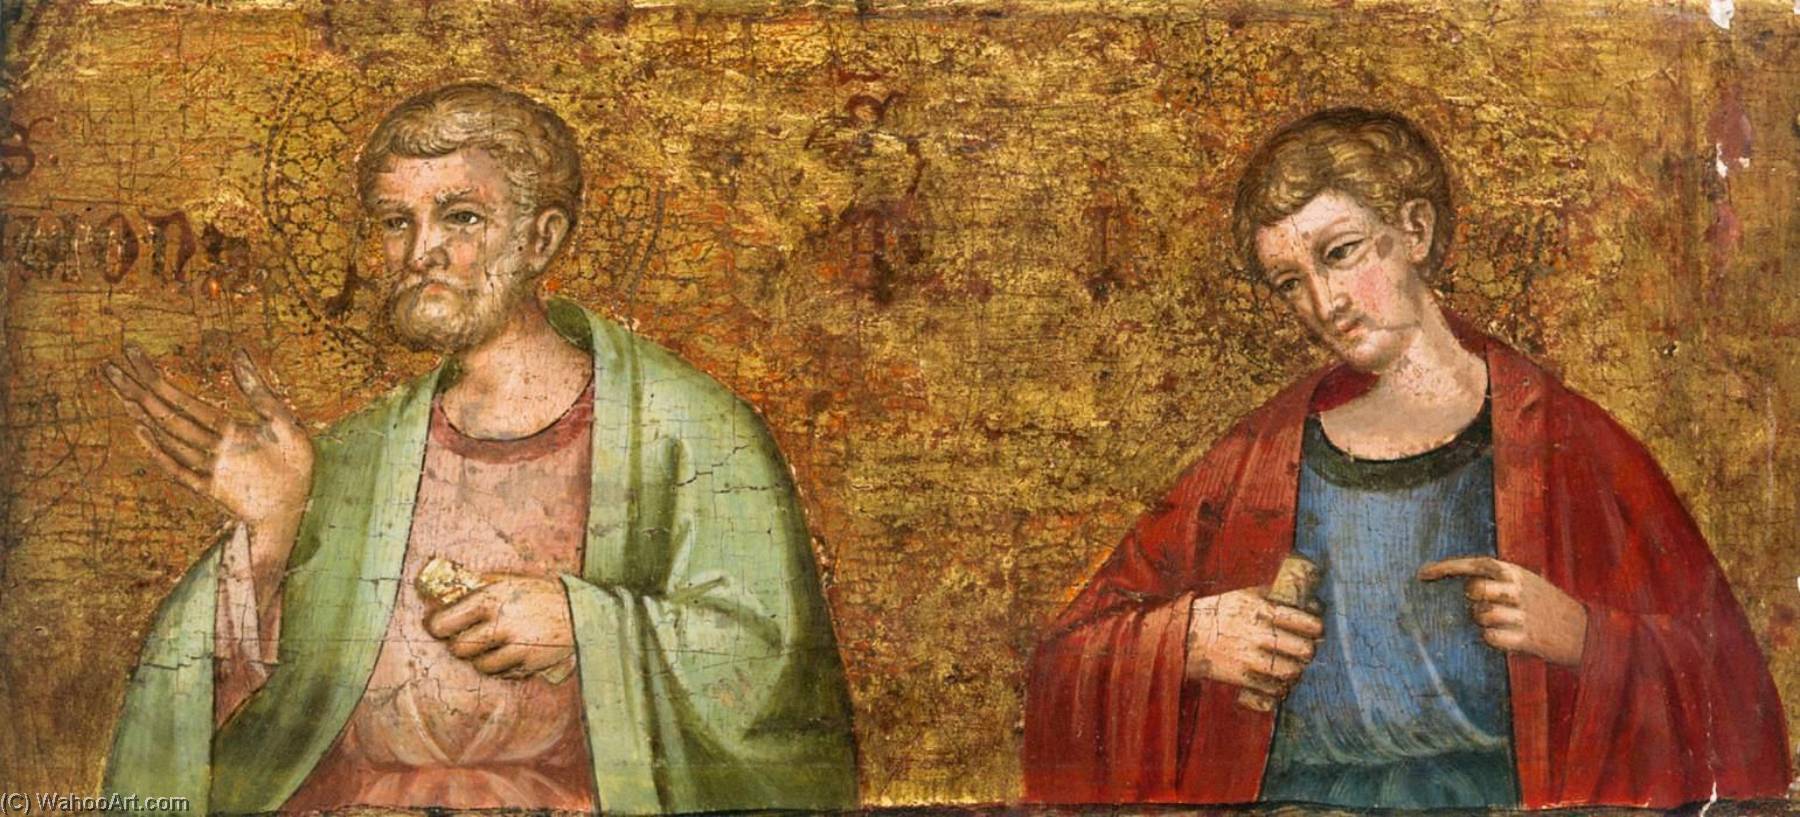 WikiOO.org - Encyclopedia of Fine Arts - Lukisan, Artwork Meneghello Di Giovanni De' Canali - Altarpiece of the Virgin Mary (predella fragment)